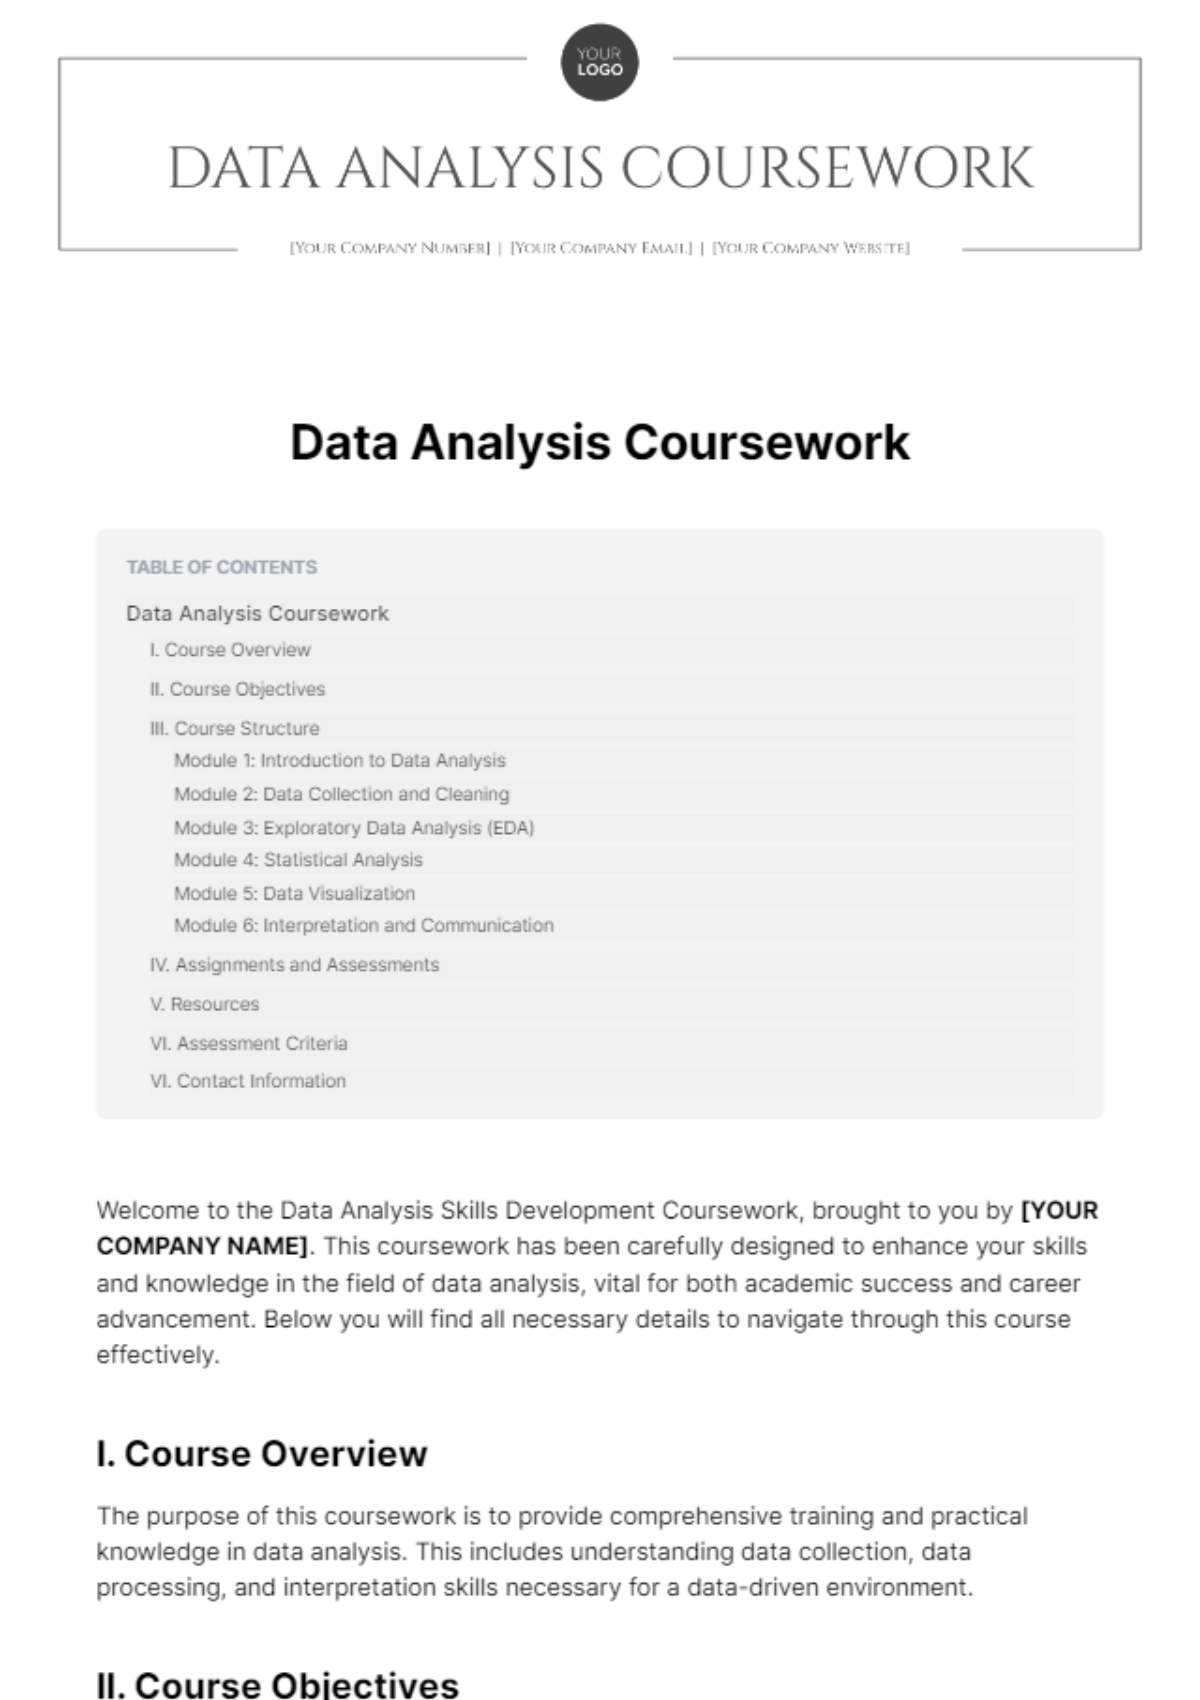 Data Analysis Coursework Template